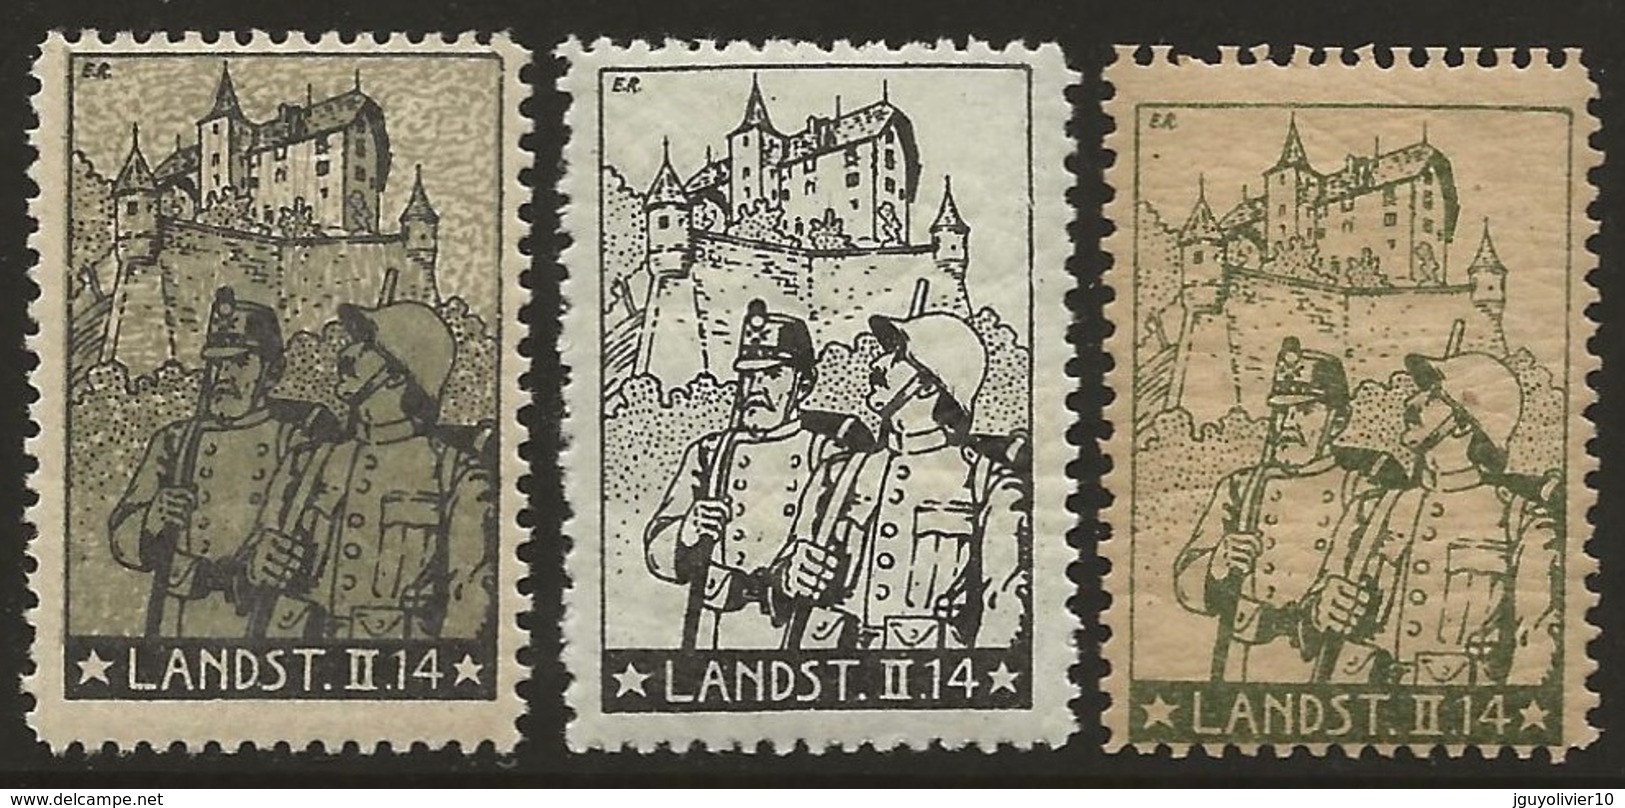 Suisse WWI Vignette Militaire Soldatenmarken LANDSTURM / HOME GUARD 1914-18 Fine H. 3 Diff. - Vignettes